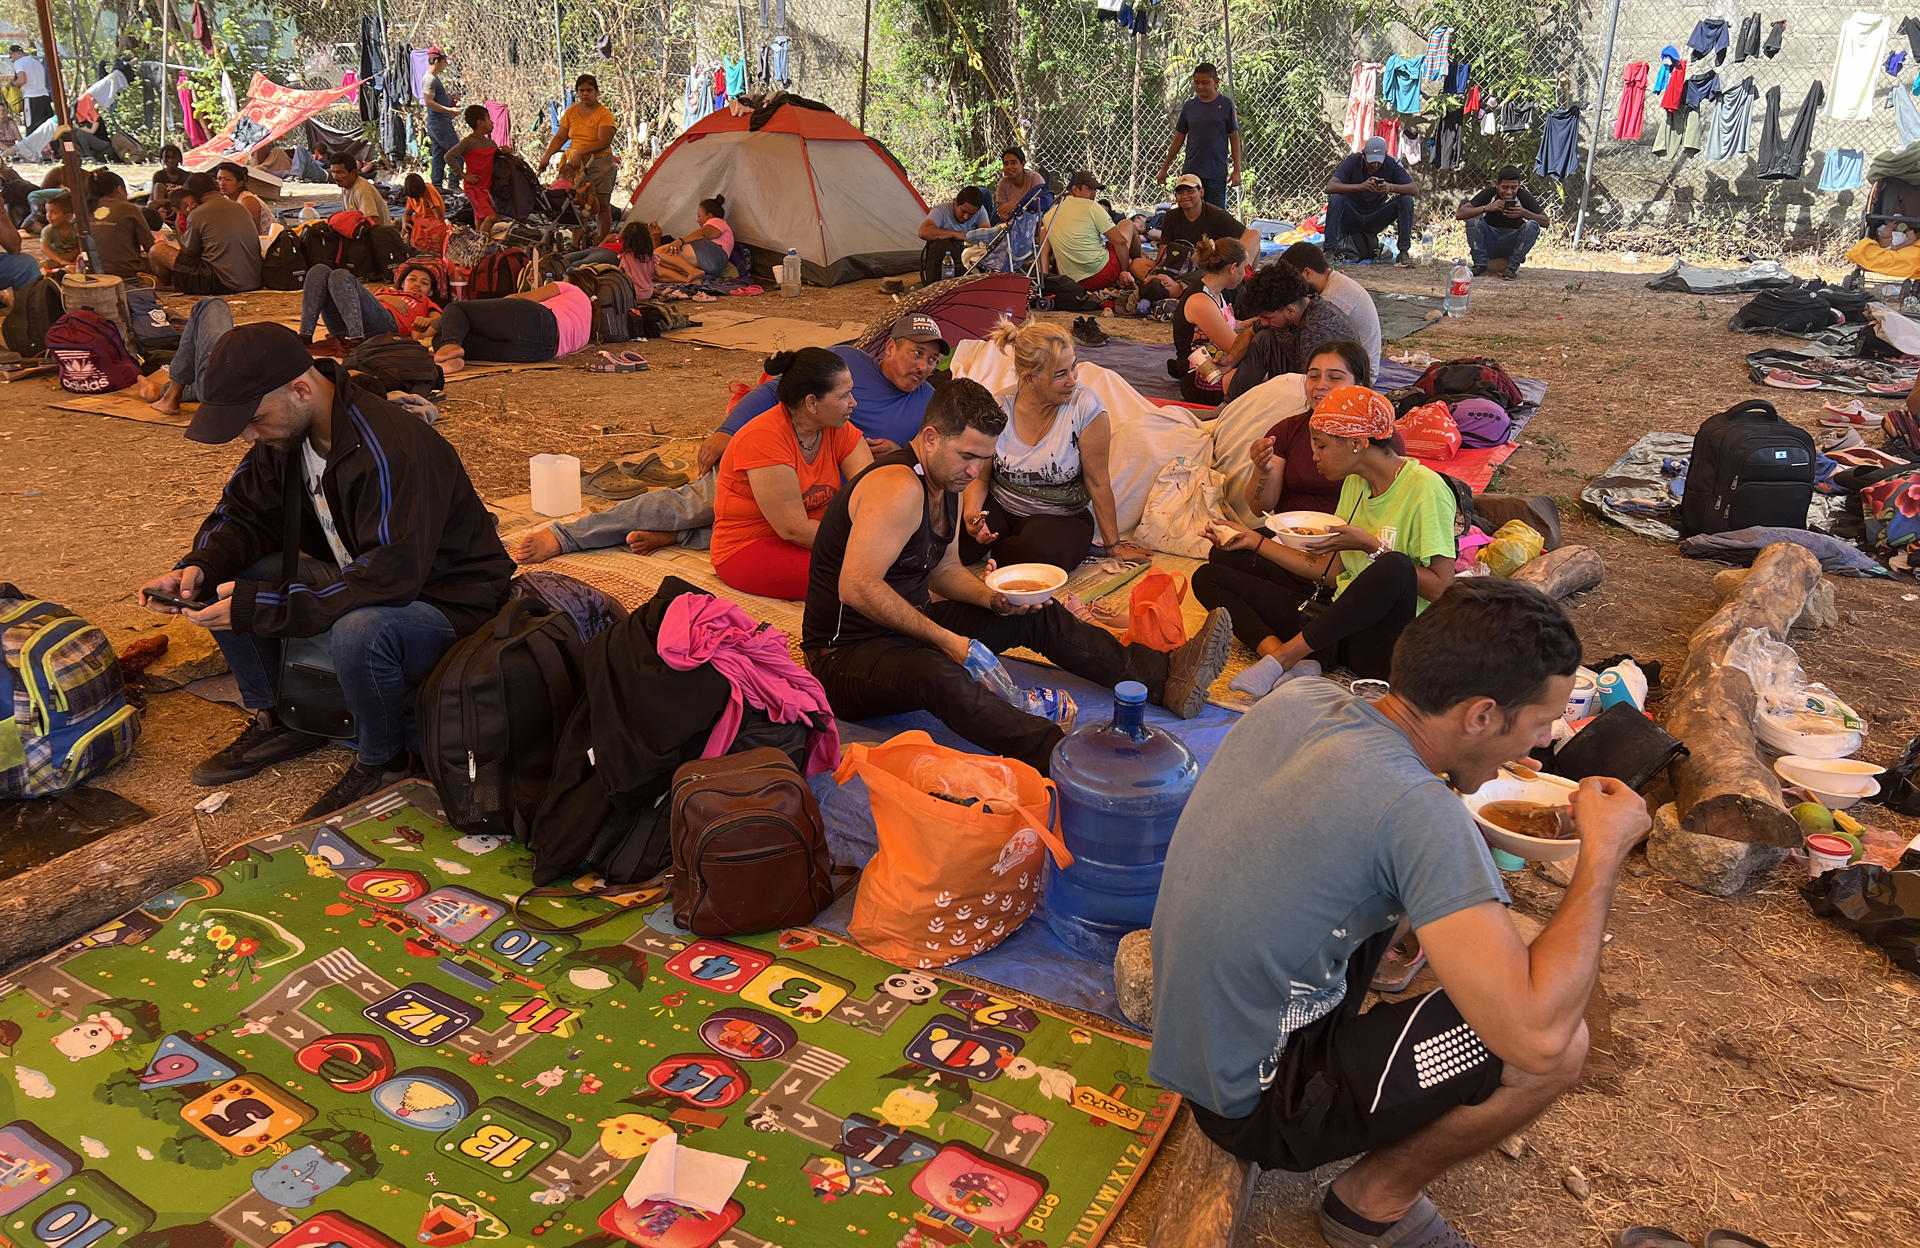 Caravana migrante, que incluye venezolanos, presiona por ayuda del gobierno de México